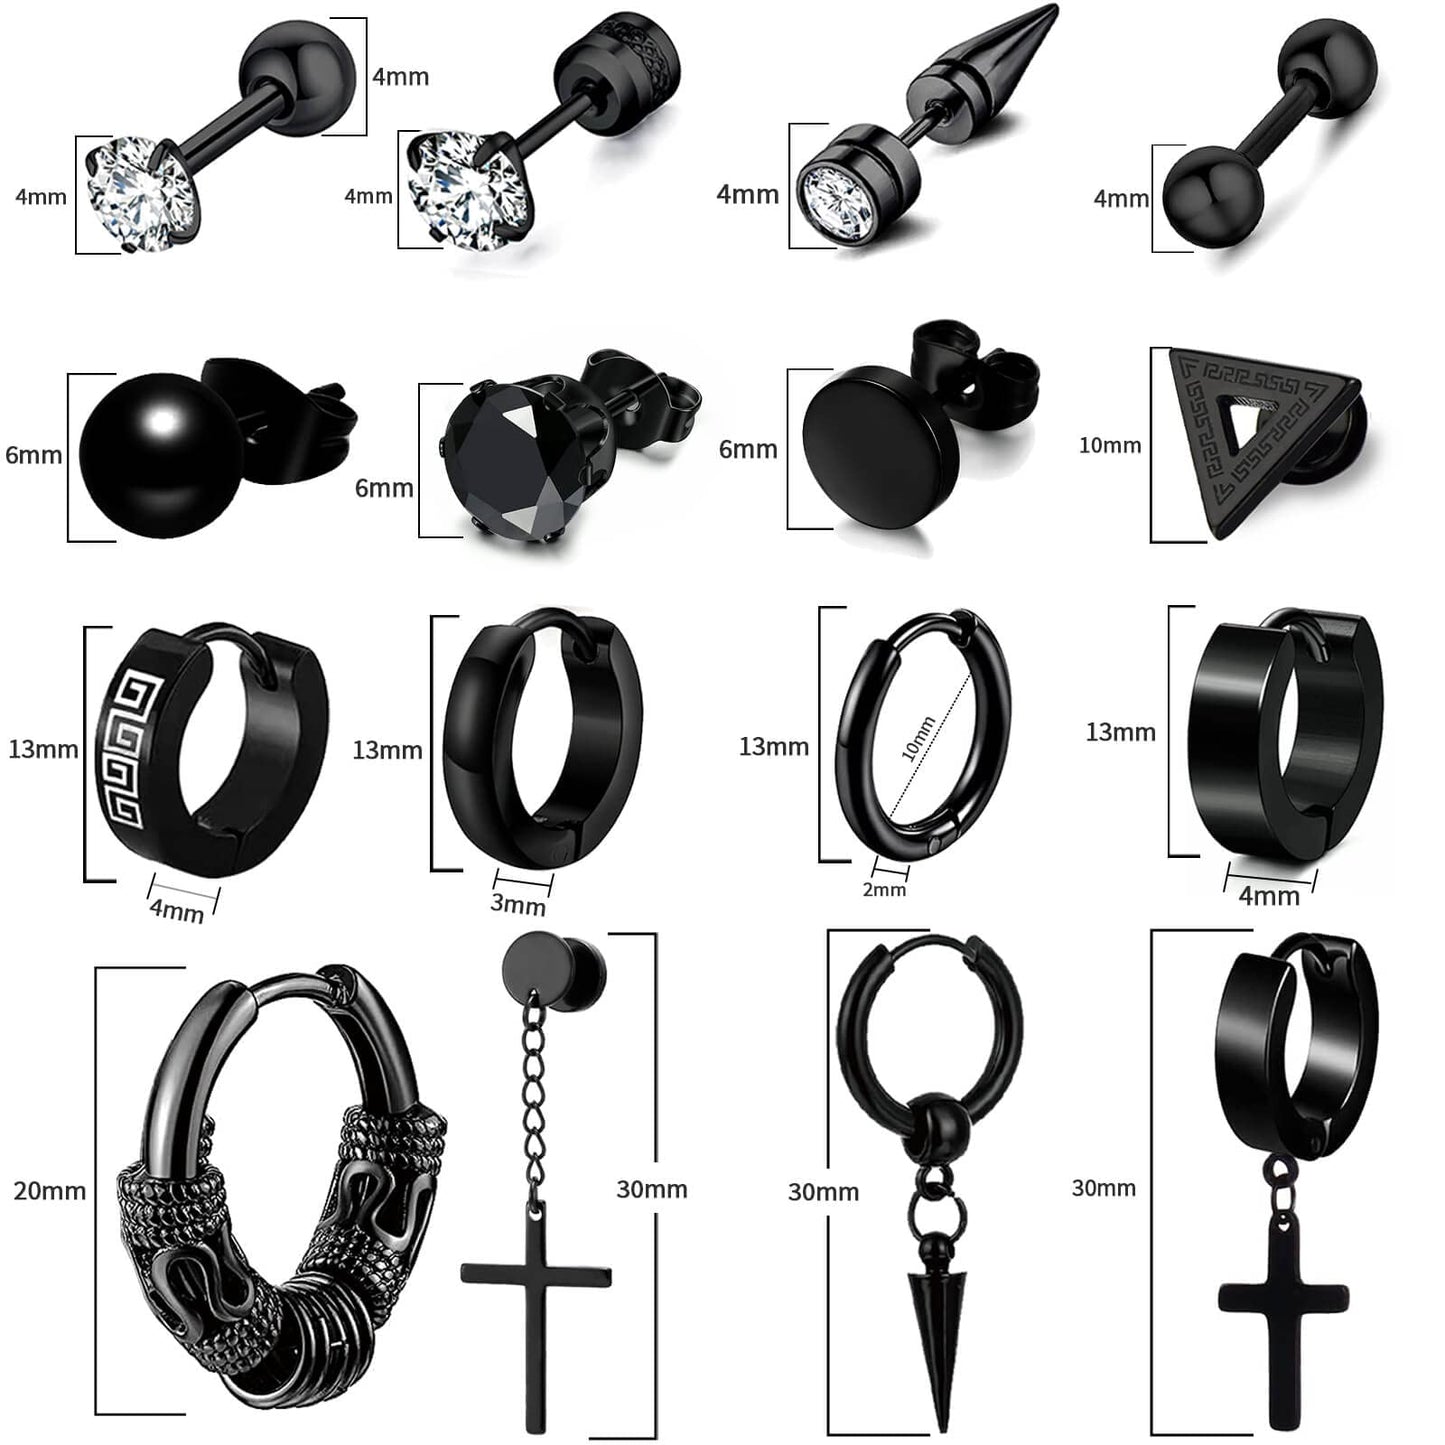 16 Pairs Men Earrings Set - Black Stainless Steel Cross Dangle Hoop & Ear Stud Fashion Piercing Jewelry for Birthdays, Parties & More